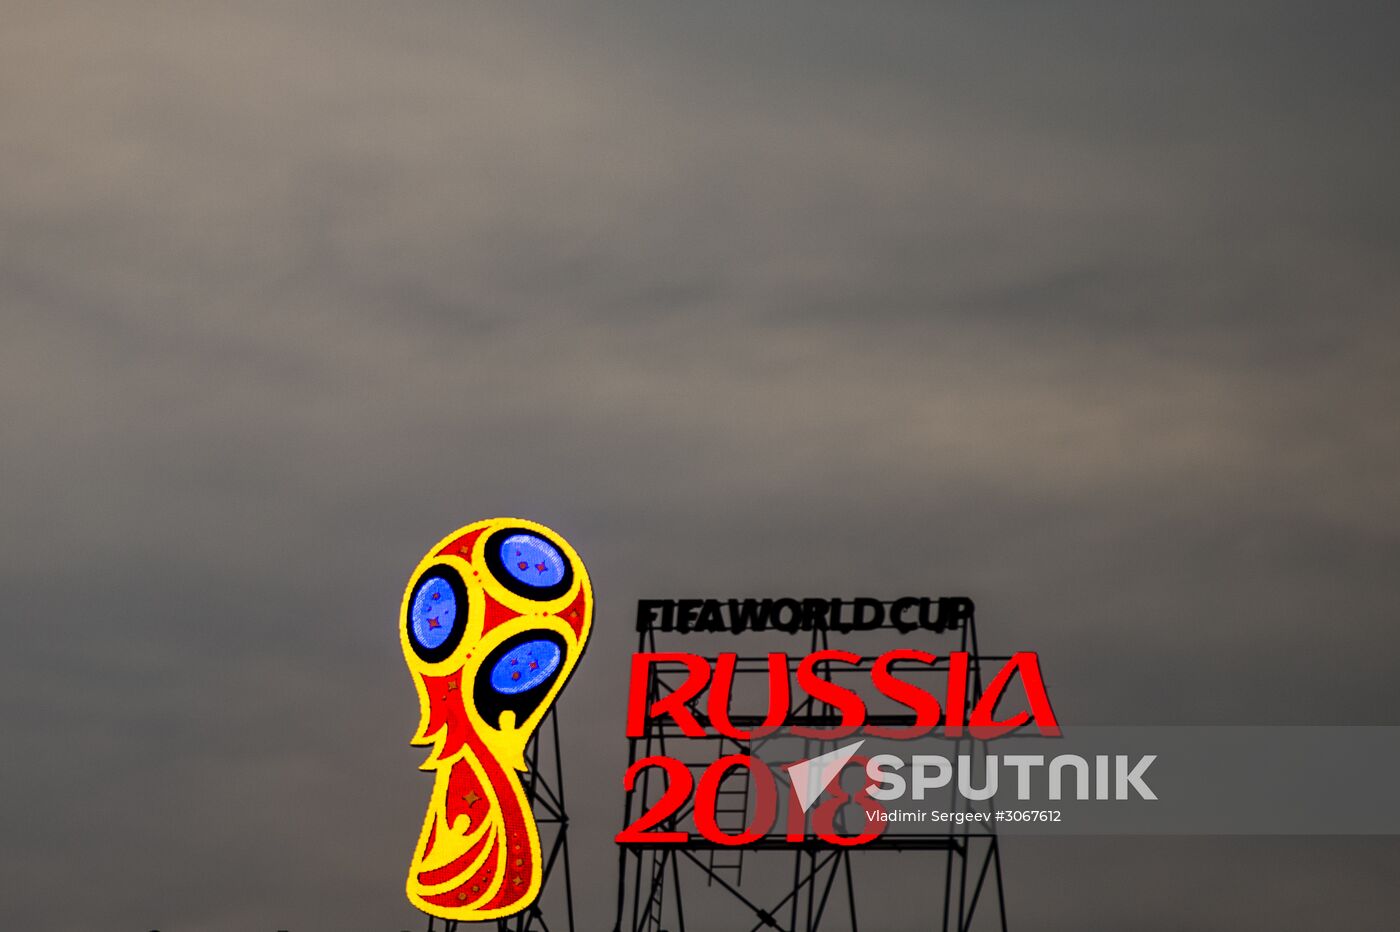 2018 FIFA World Cup emblem